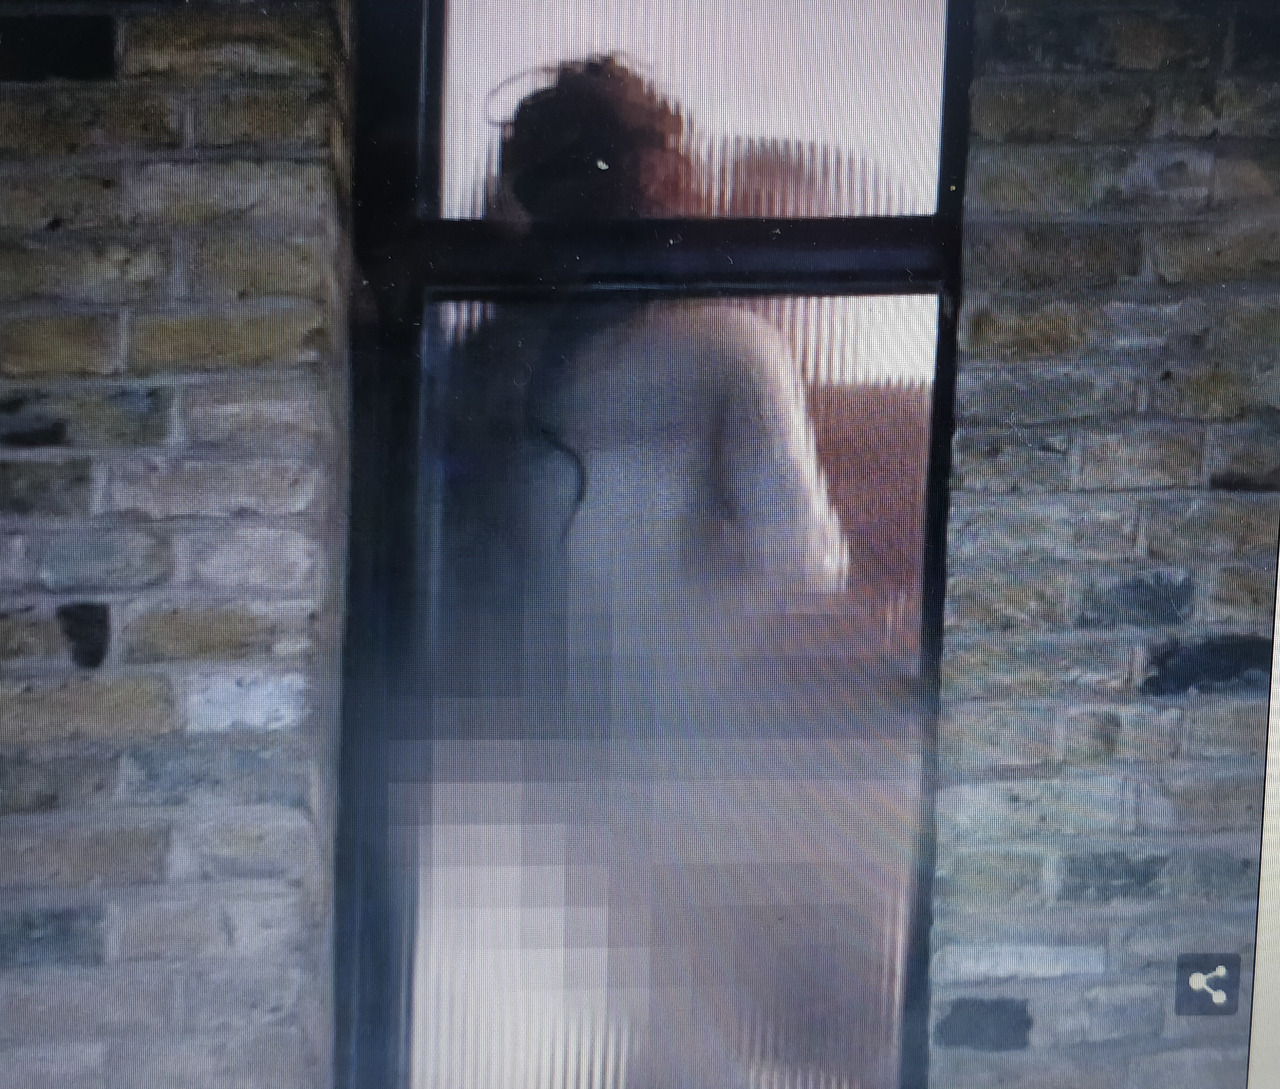 Sesso nudi alla finestra dellhotel dei vip il video con le scene hard è virale foto foto